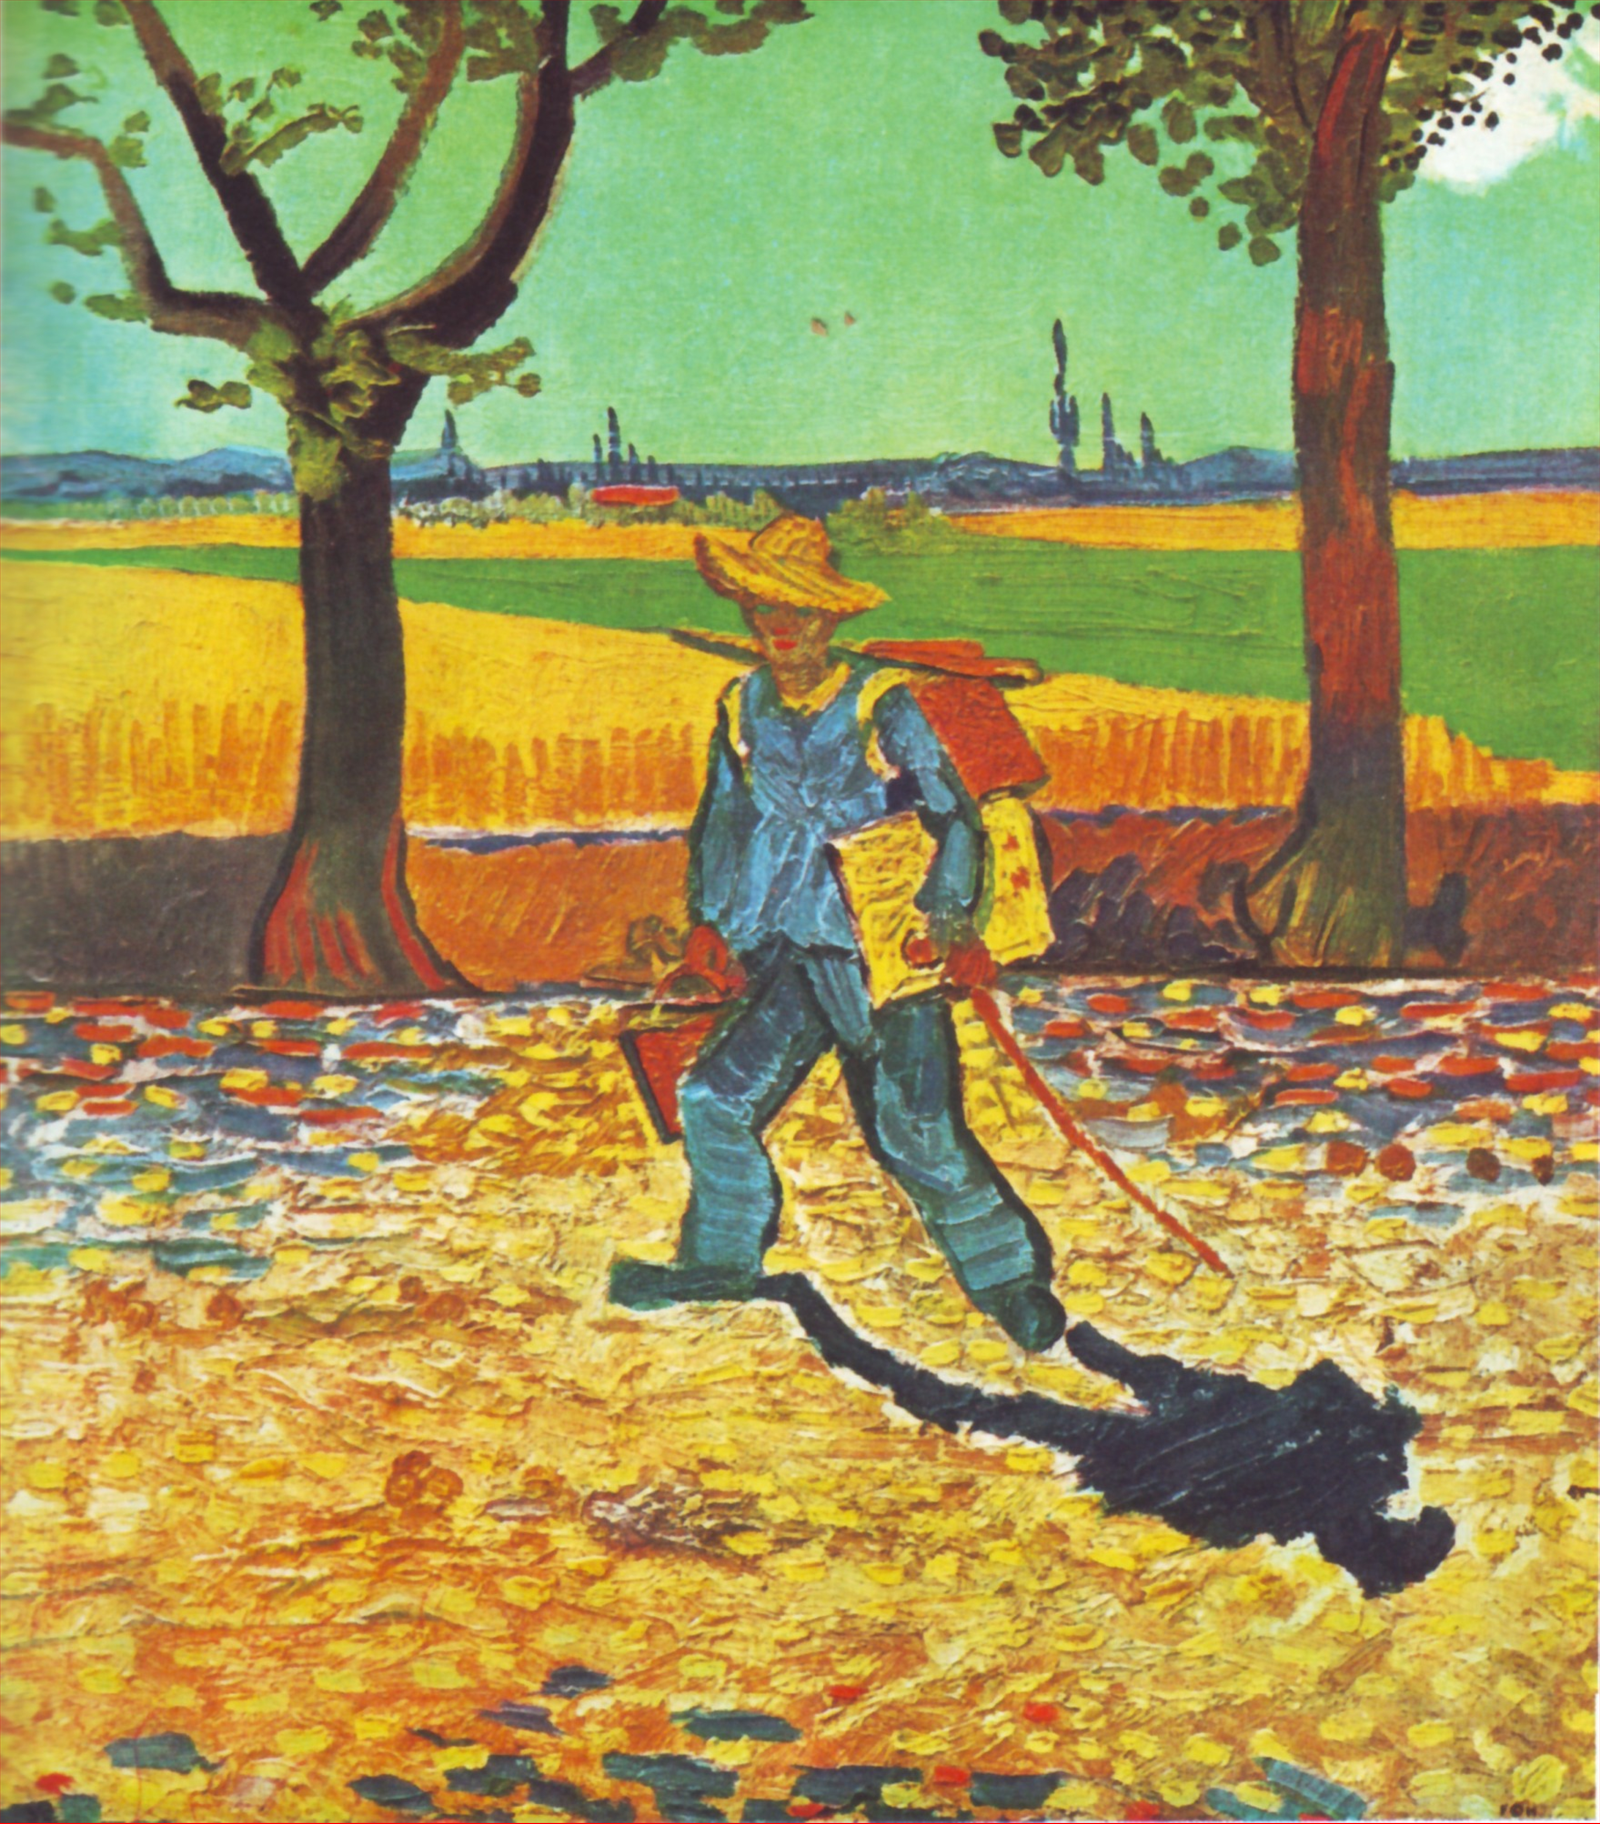 Malíř na cestě do práce by Vincent van Gogh - 1888 - -- 